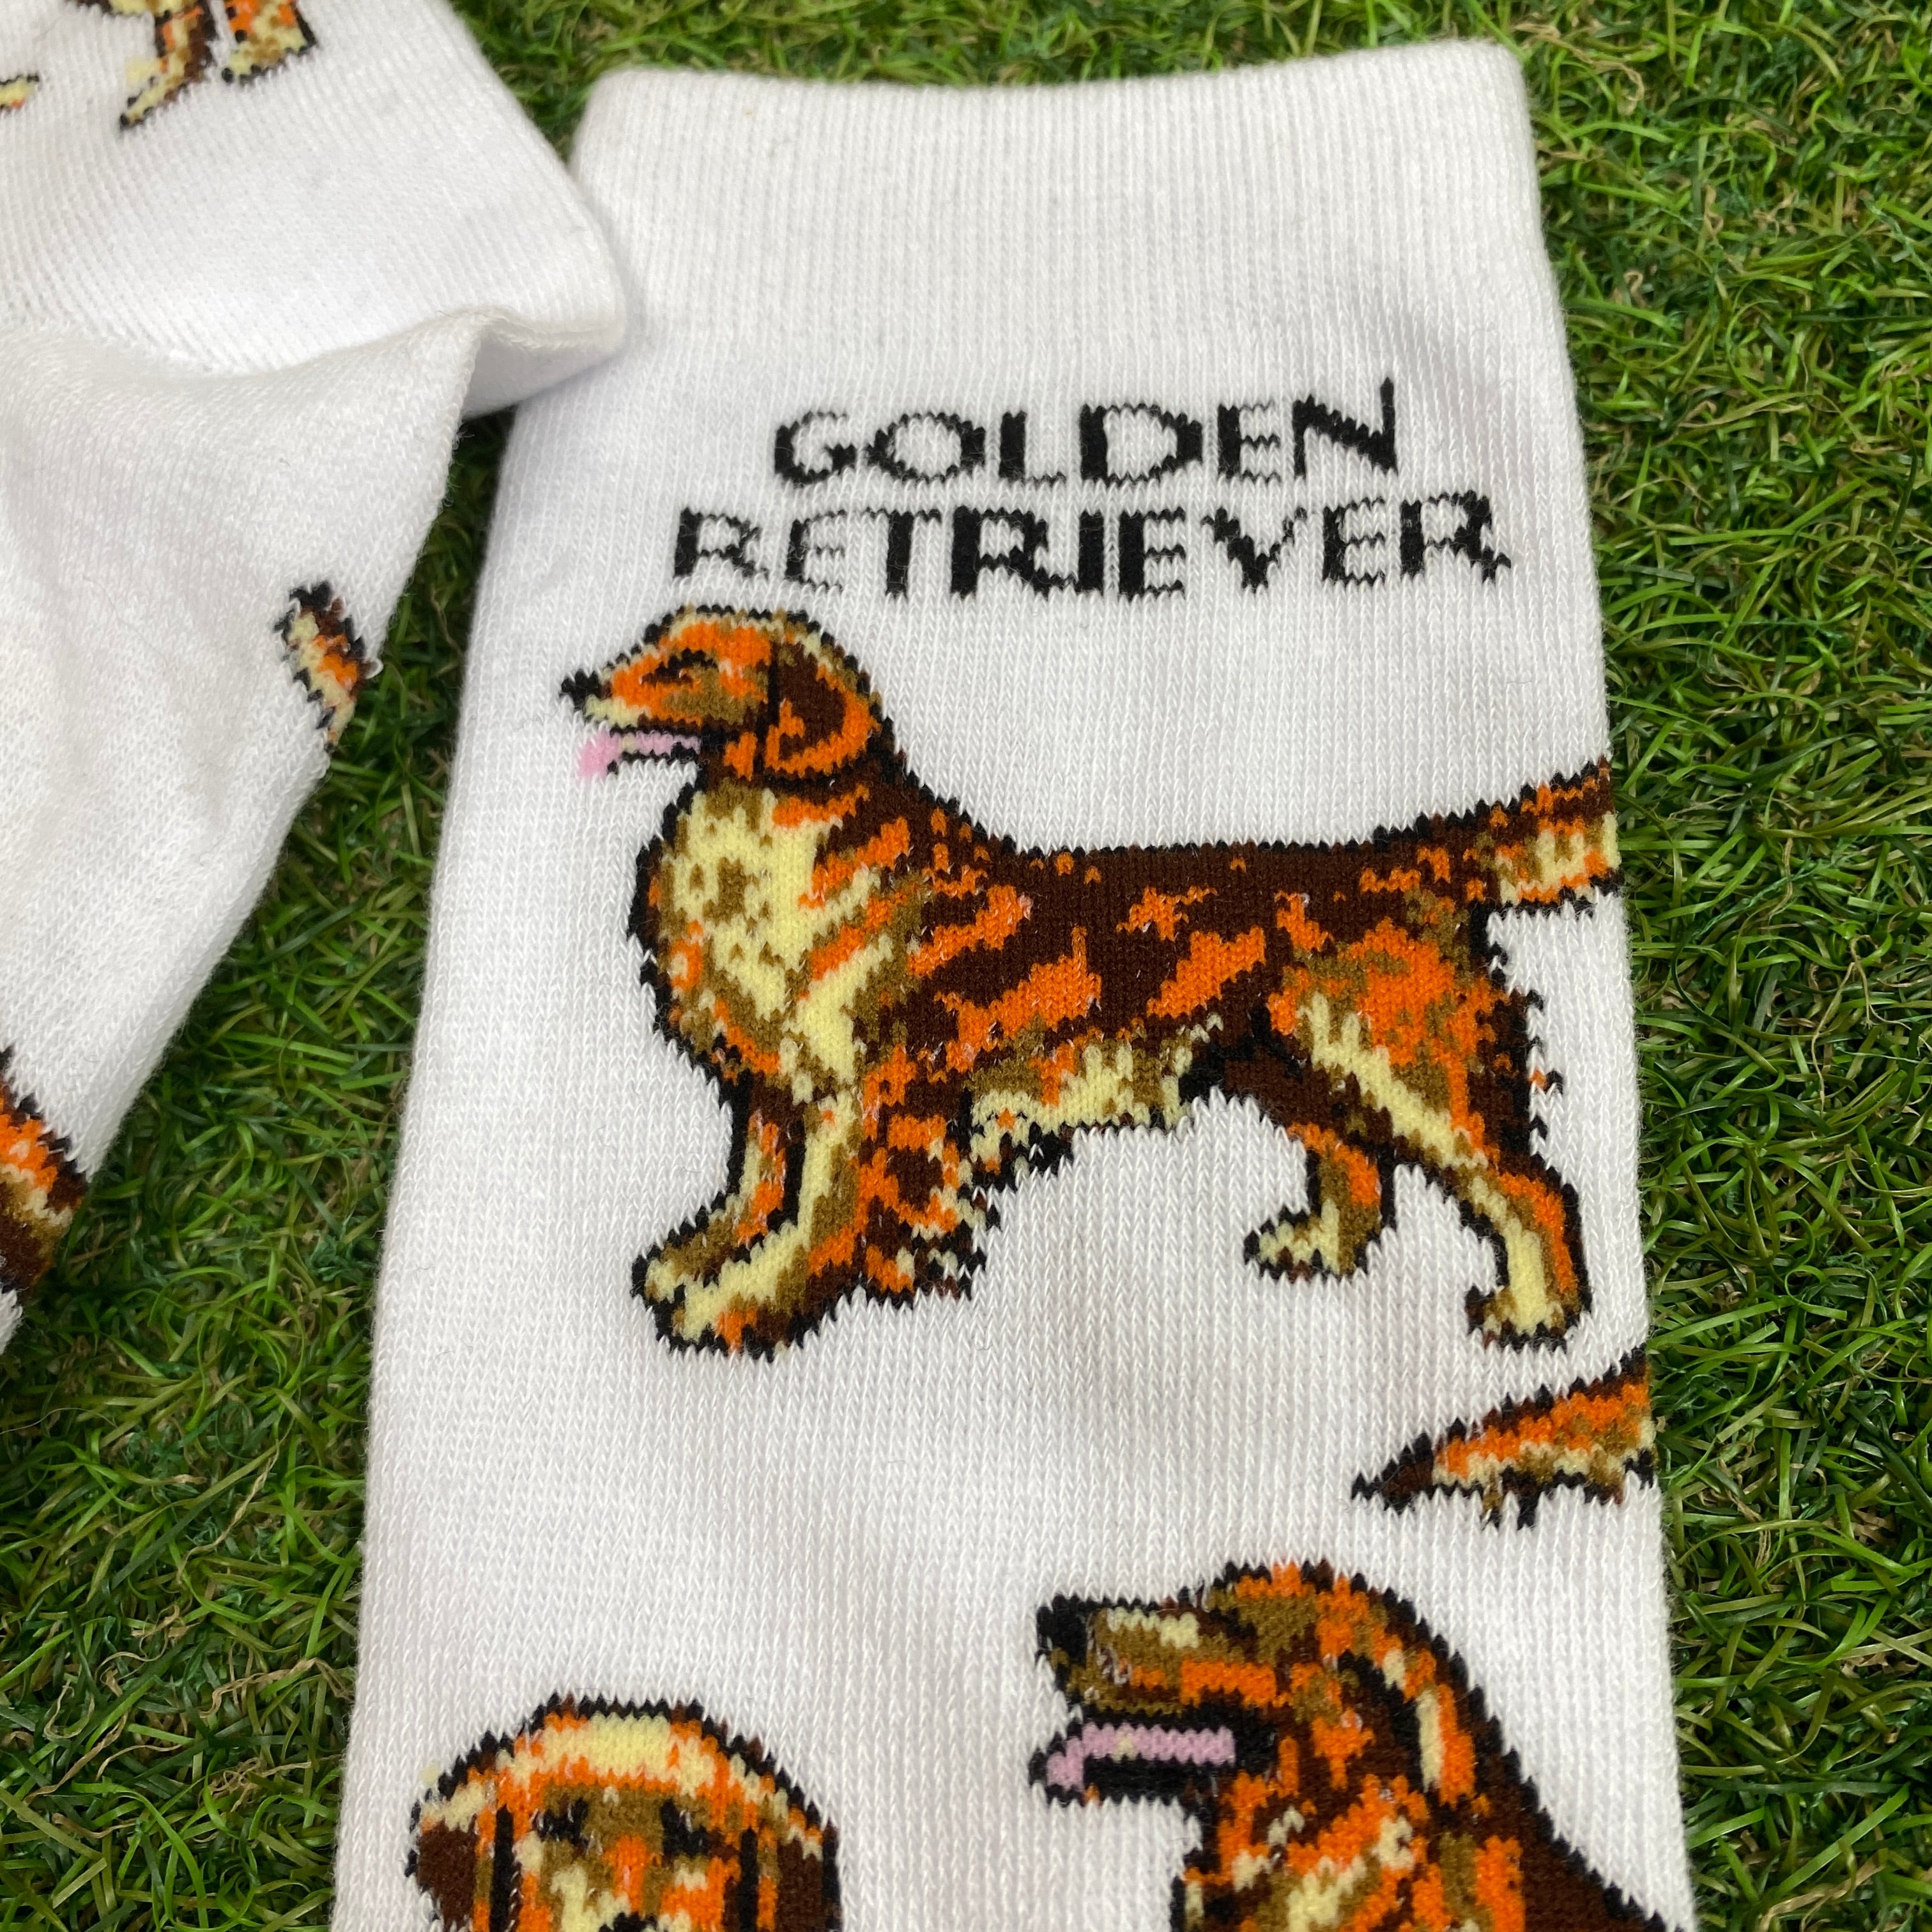 Retro Golden Retriever Dog Socks White UK12-8